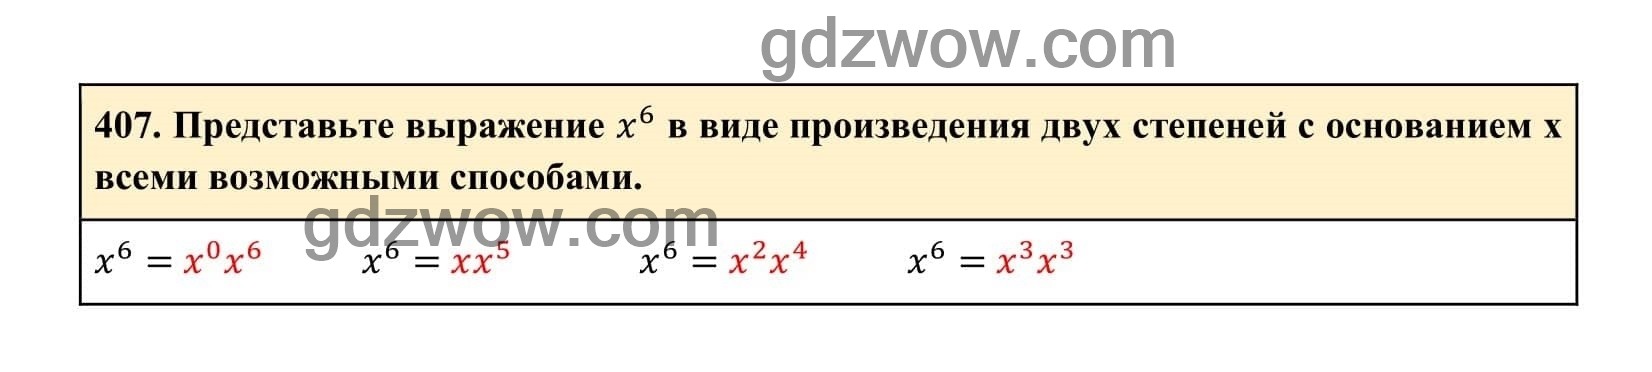 Упражнение 407 - ГДЗ по Алгебре 7 класс Учебник Макарычев (решебник) - GDZwow